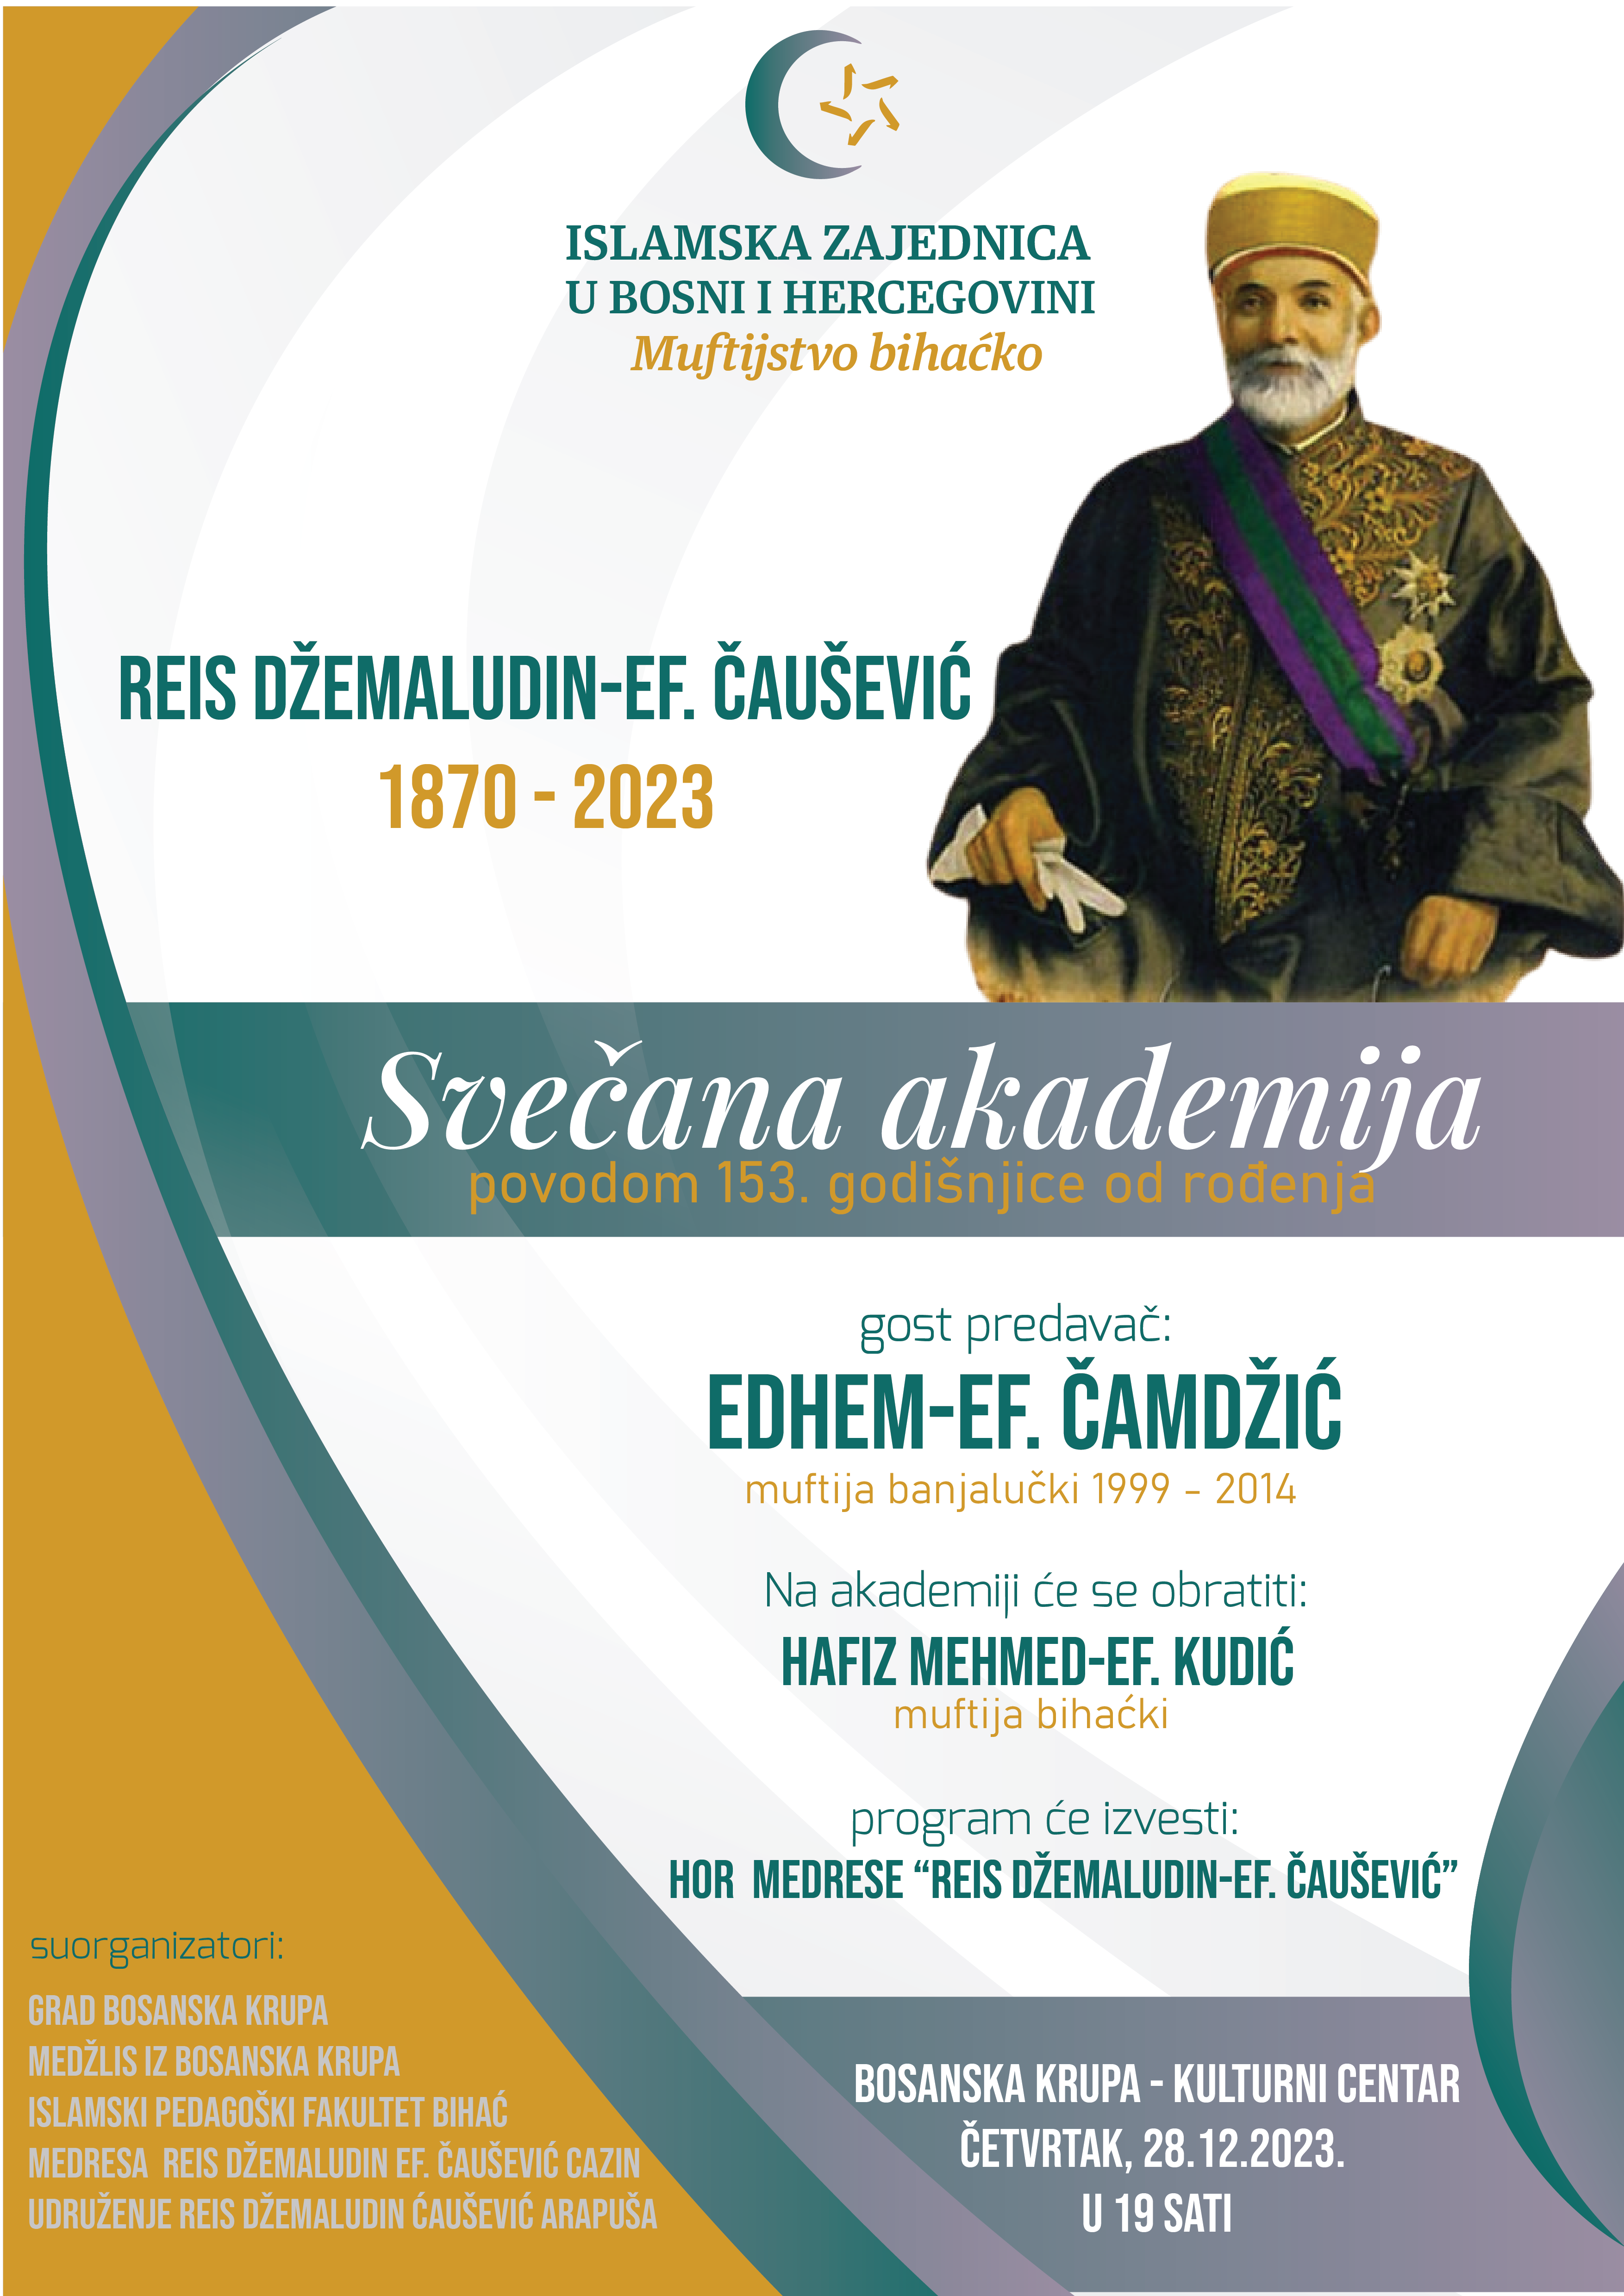 Reis Causevic - Akademija 2023-01.png - Na današnji dan rođen reis Džemaludin-ef. Čaušević, svečana akademija u Bosanskoj Krupi